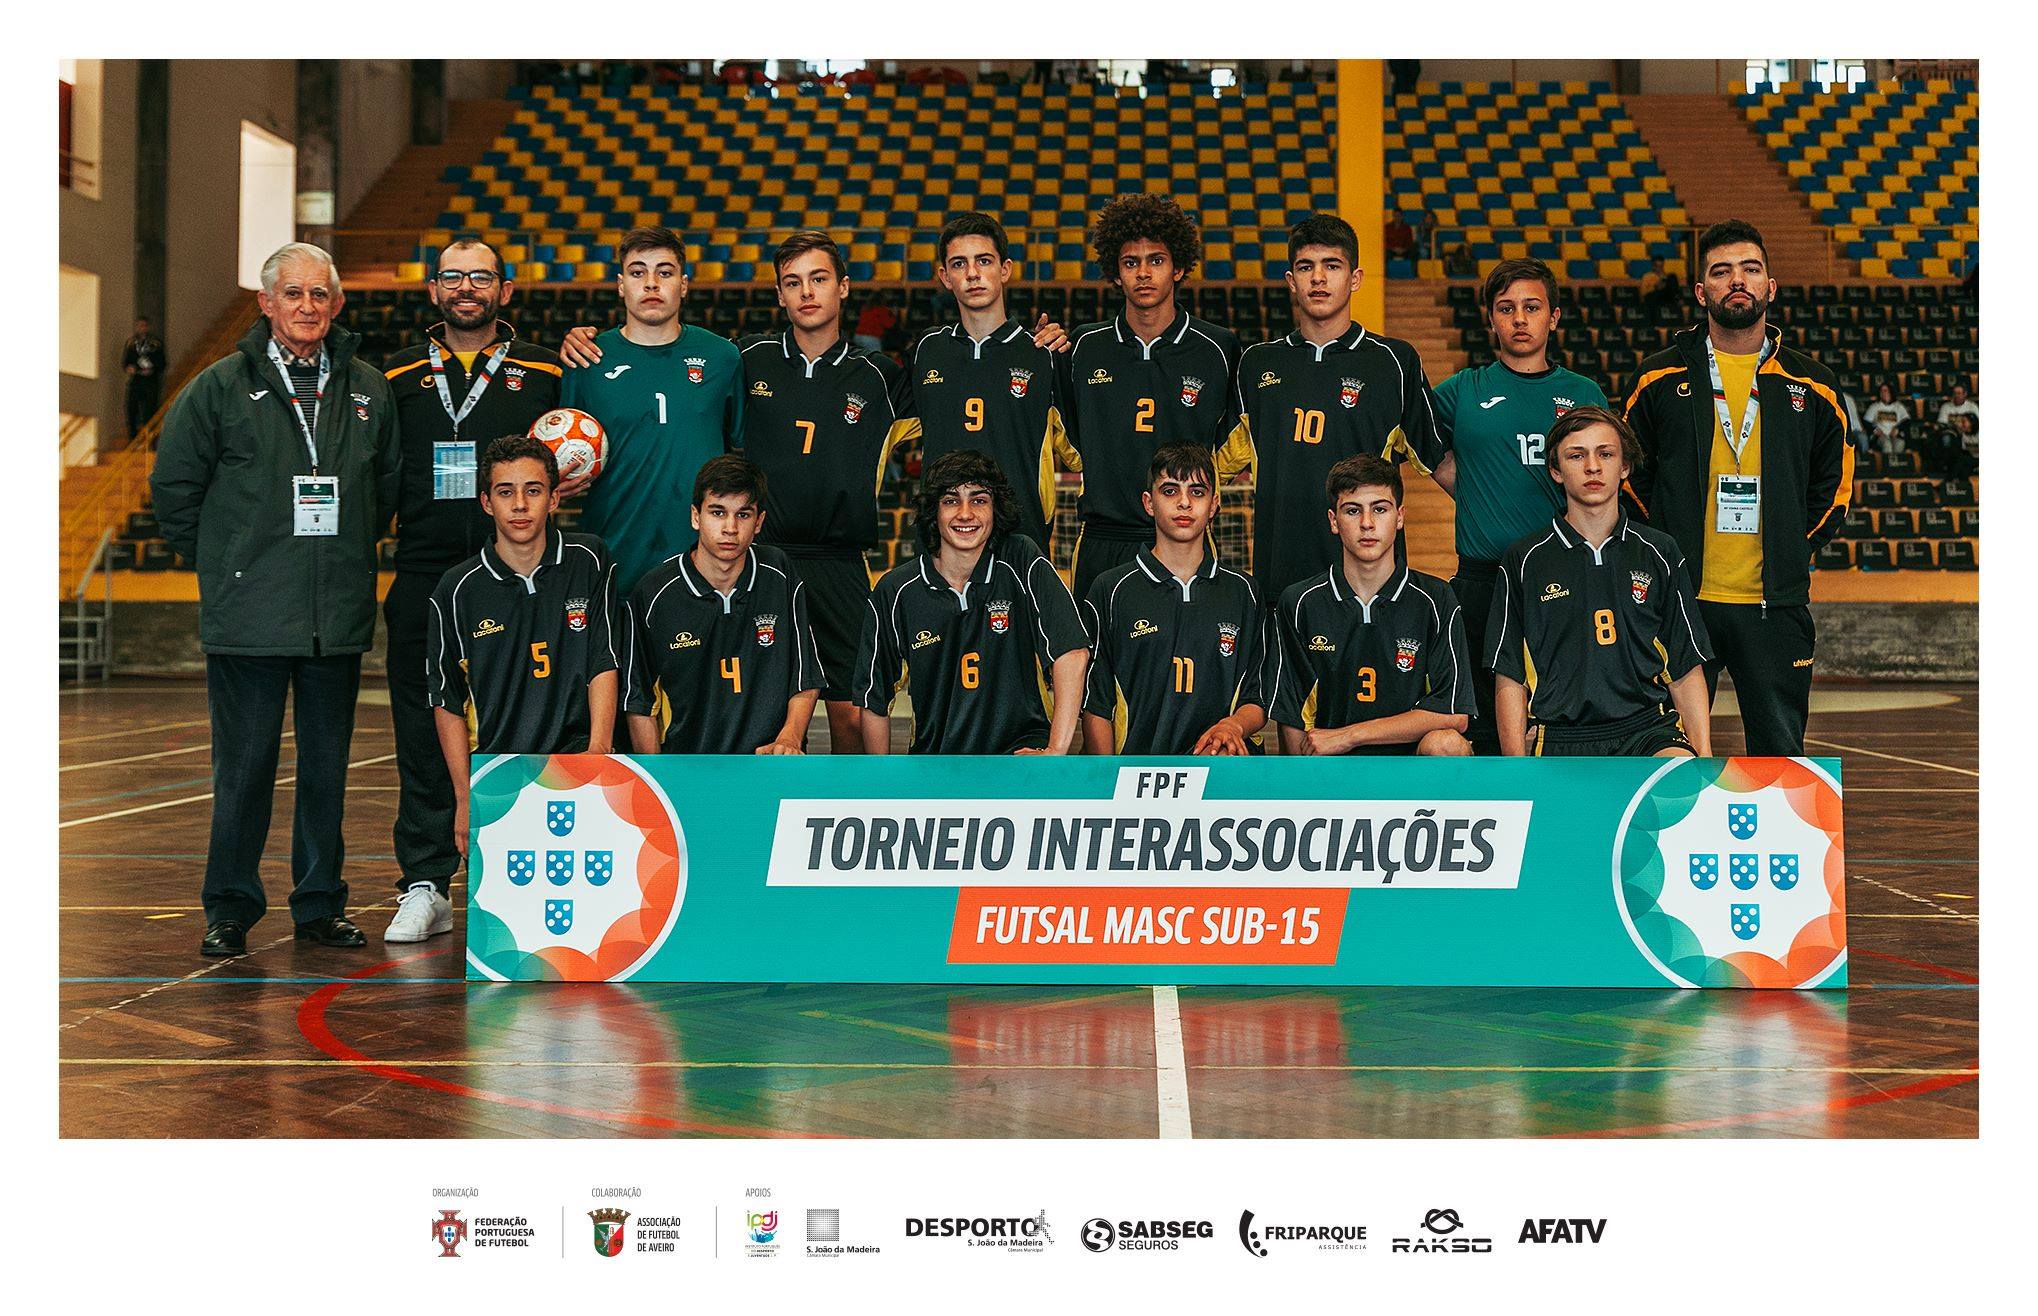 Torneio Nacional Interassociações de Futsal Masculino Sub-15